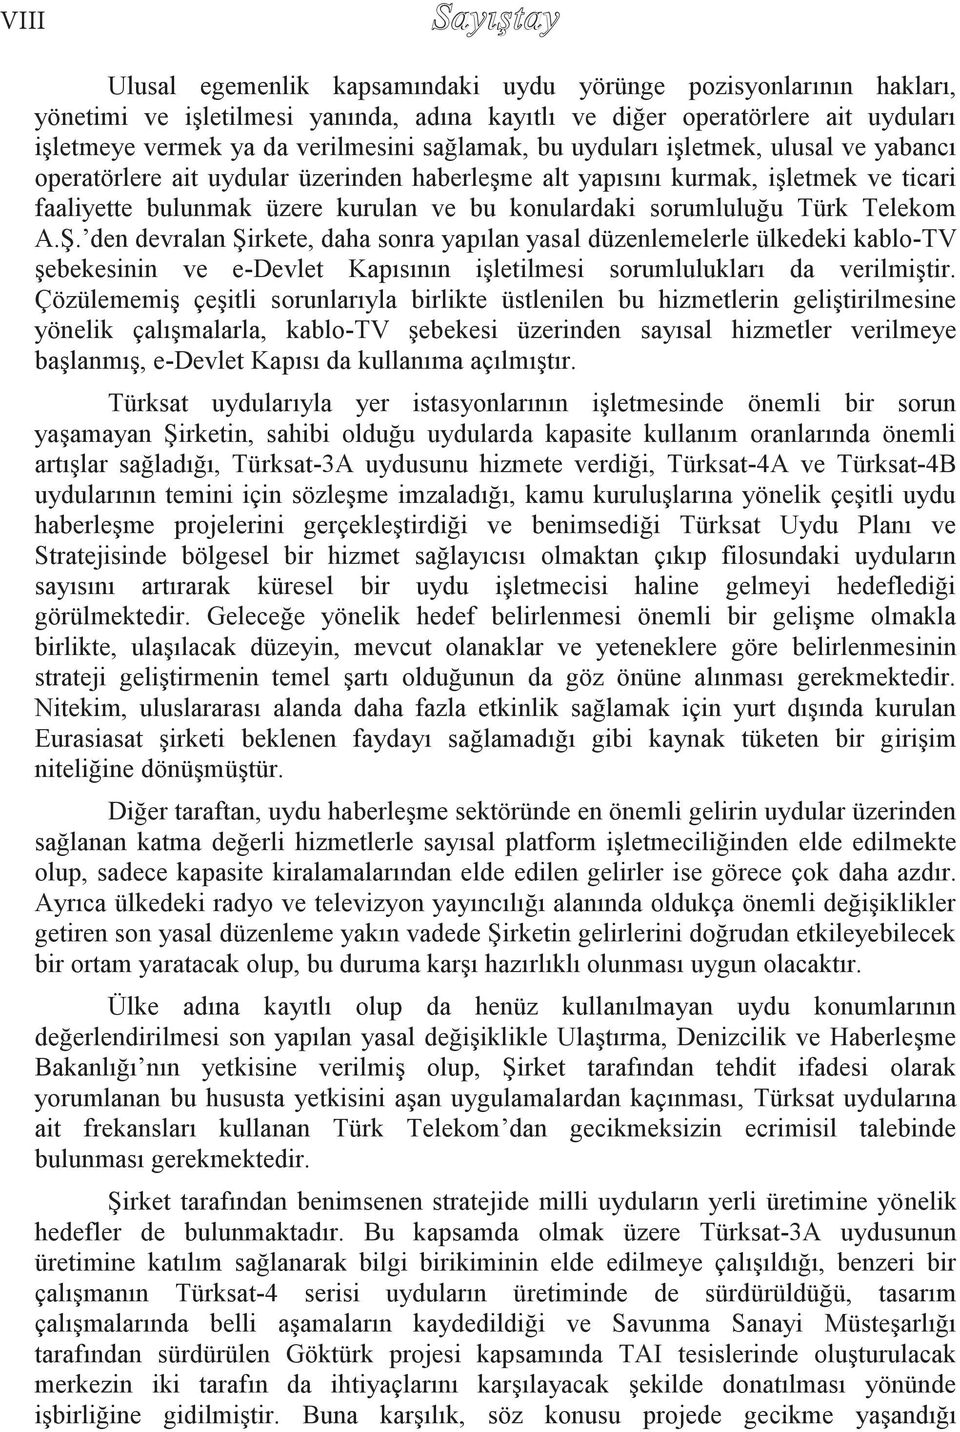 Türk Telekom A.Ş. den devralan Şirkete, daha sonra yapılan yasal düzenlemelerle ülkedeki kablo-tv şebekesinin ve e-devlet Kapısının işletilmesi sorumlulukları da verilmiştir.